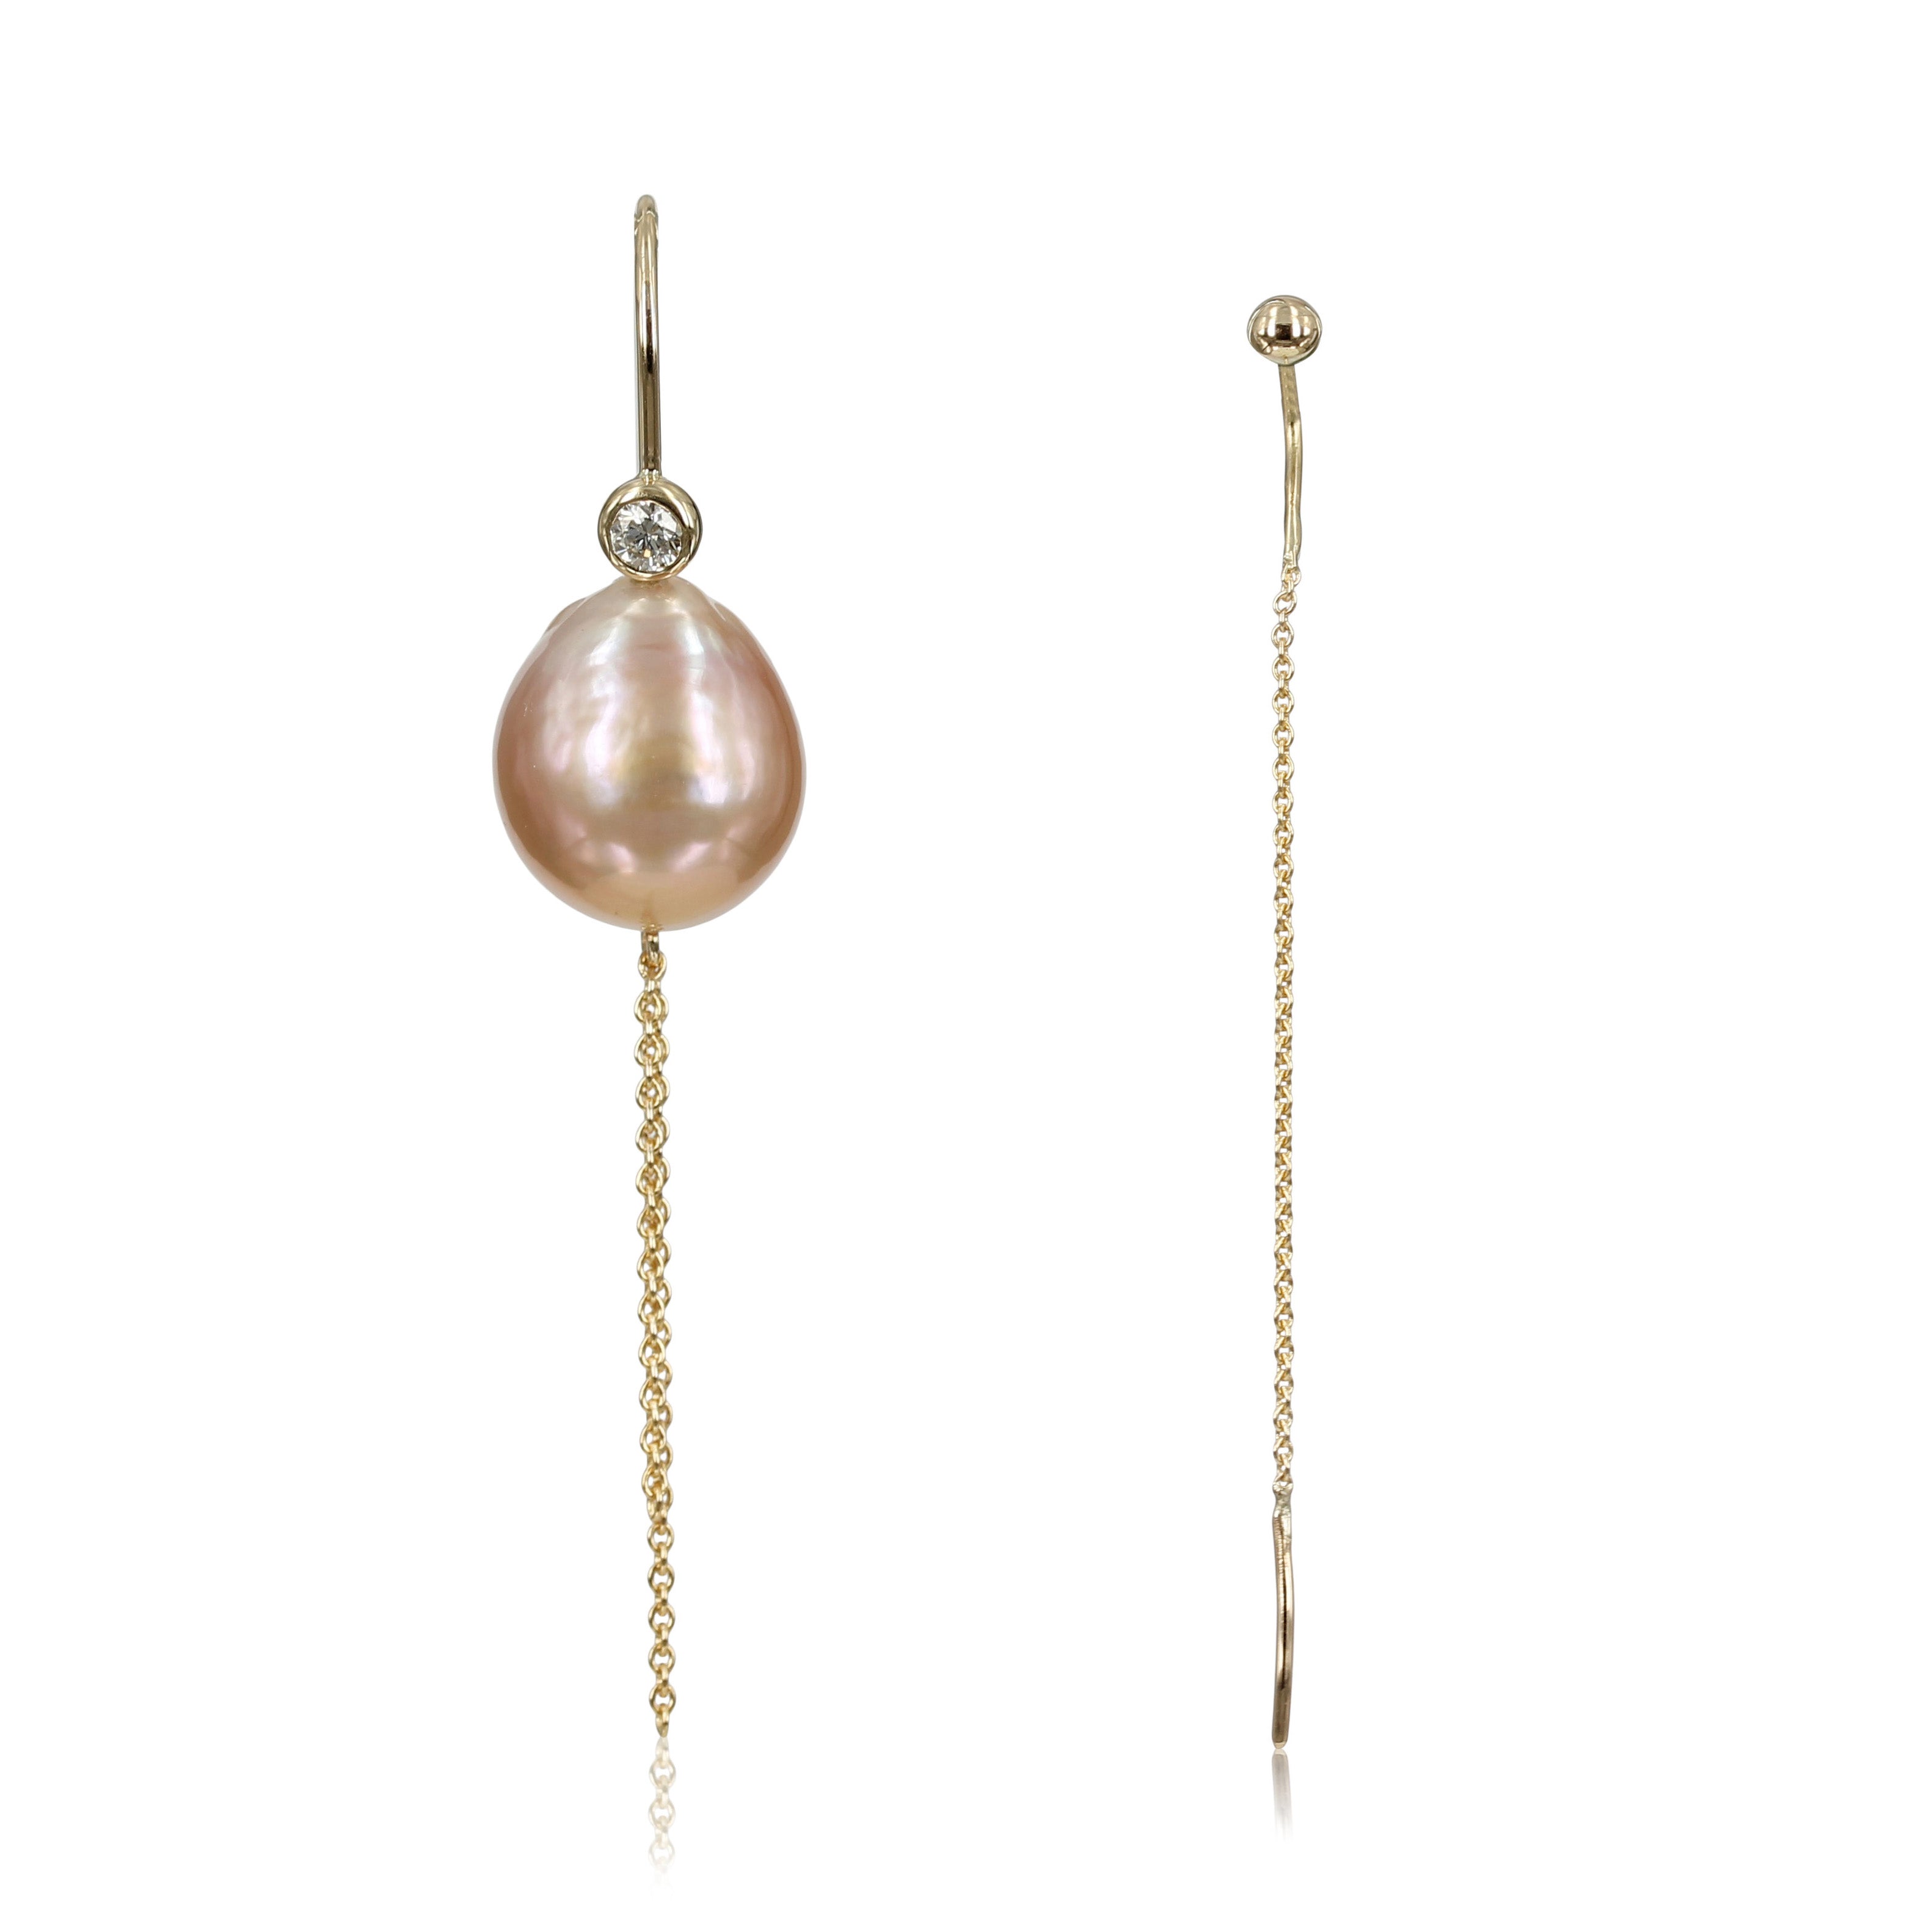 Elegante guld øreringe med guldbøjler, ferskvandsperler, diamanter og kæde detalje.